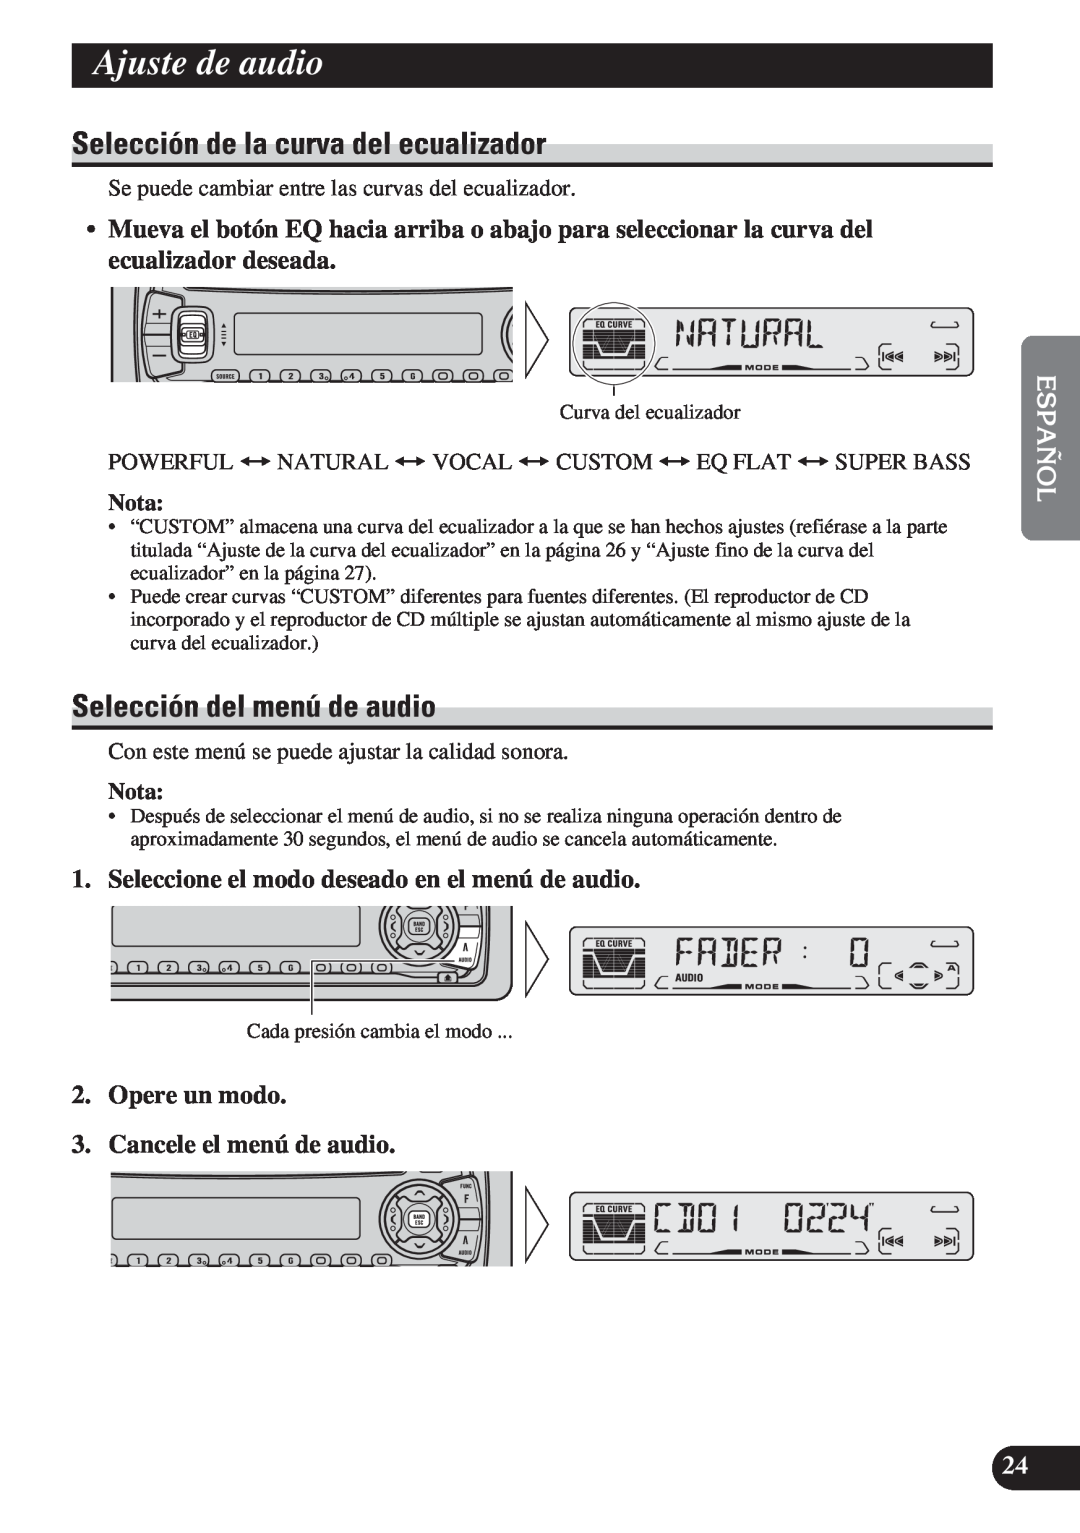 Pioneer DEH-P3150 Ajuste de audio, Selección de la curva del ecualizador, Selección del menú de audio, Nota 